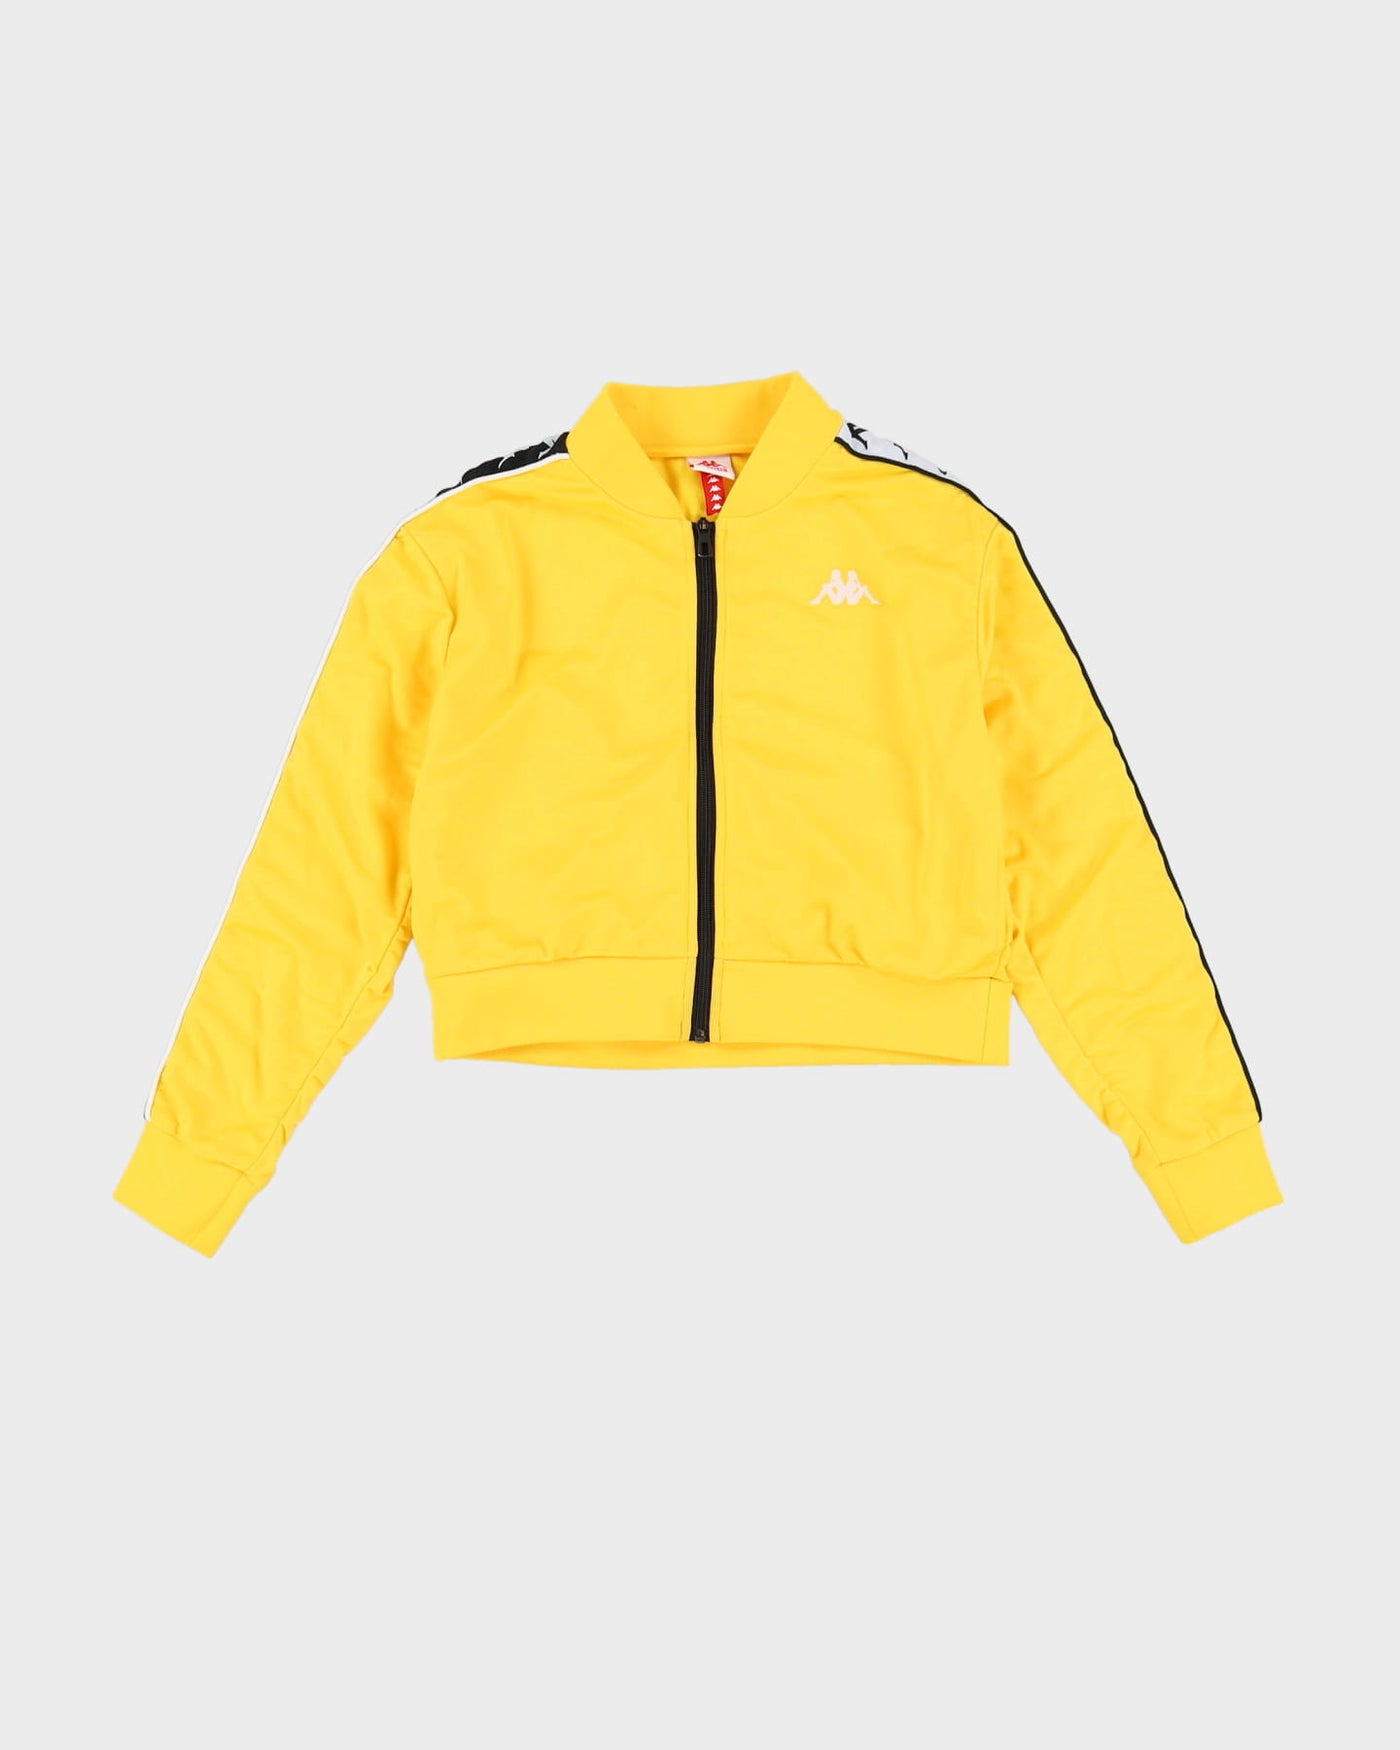 Kappa Cropped Yellow Track Jacket - XS